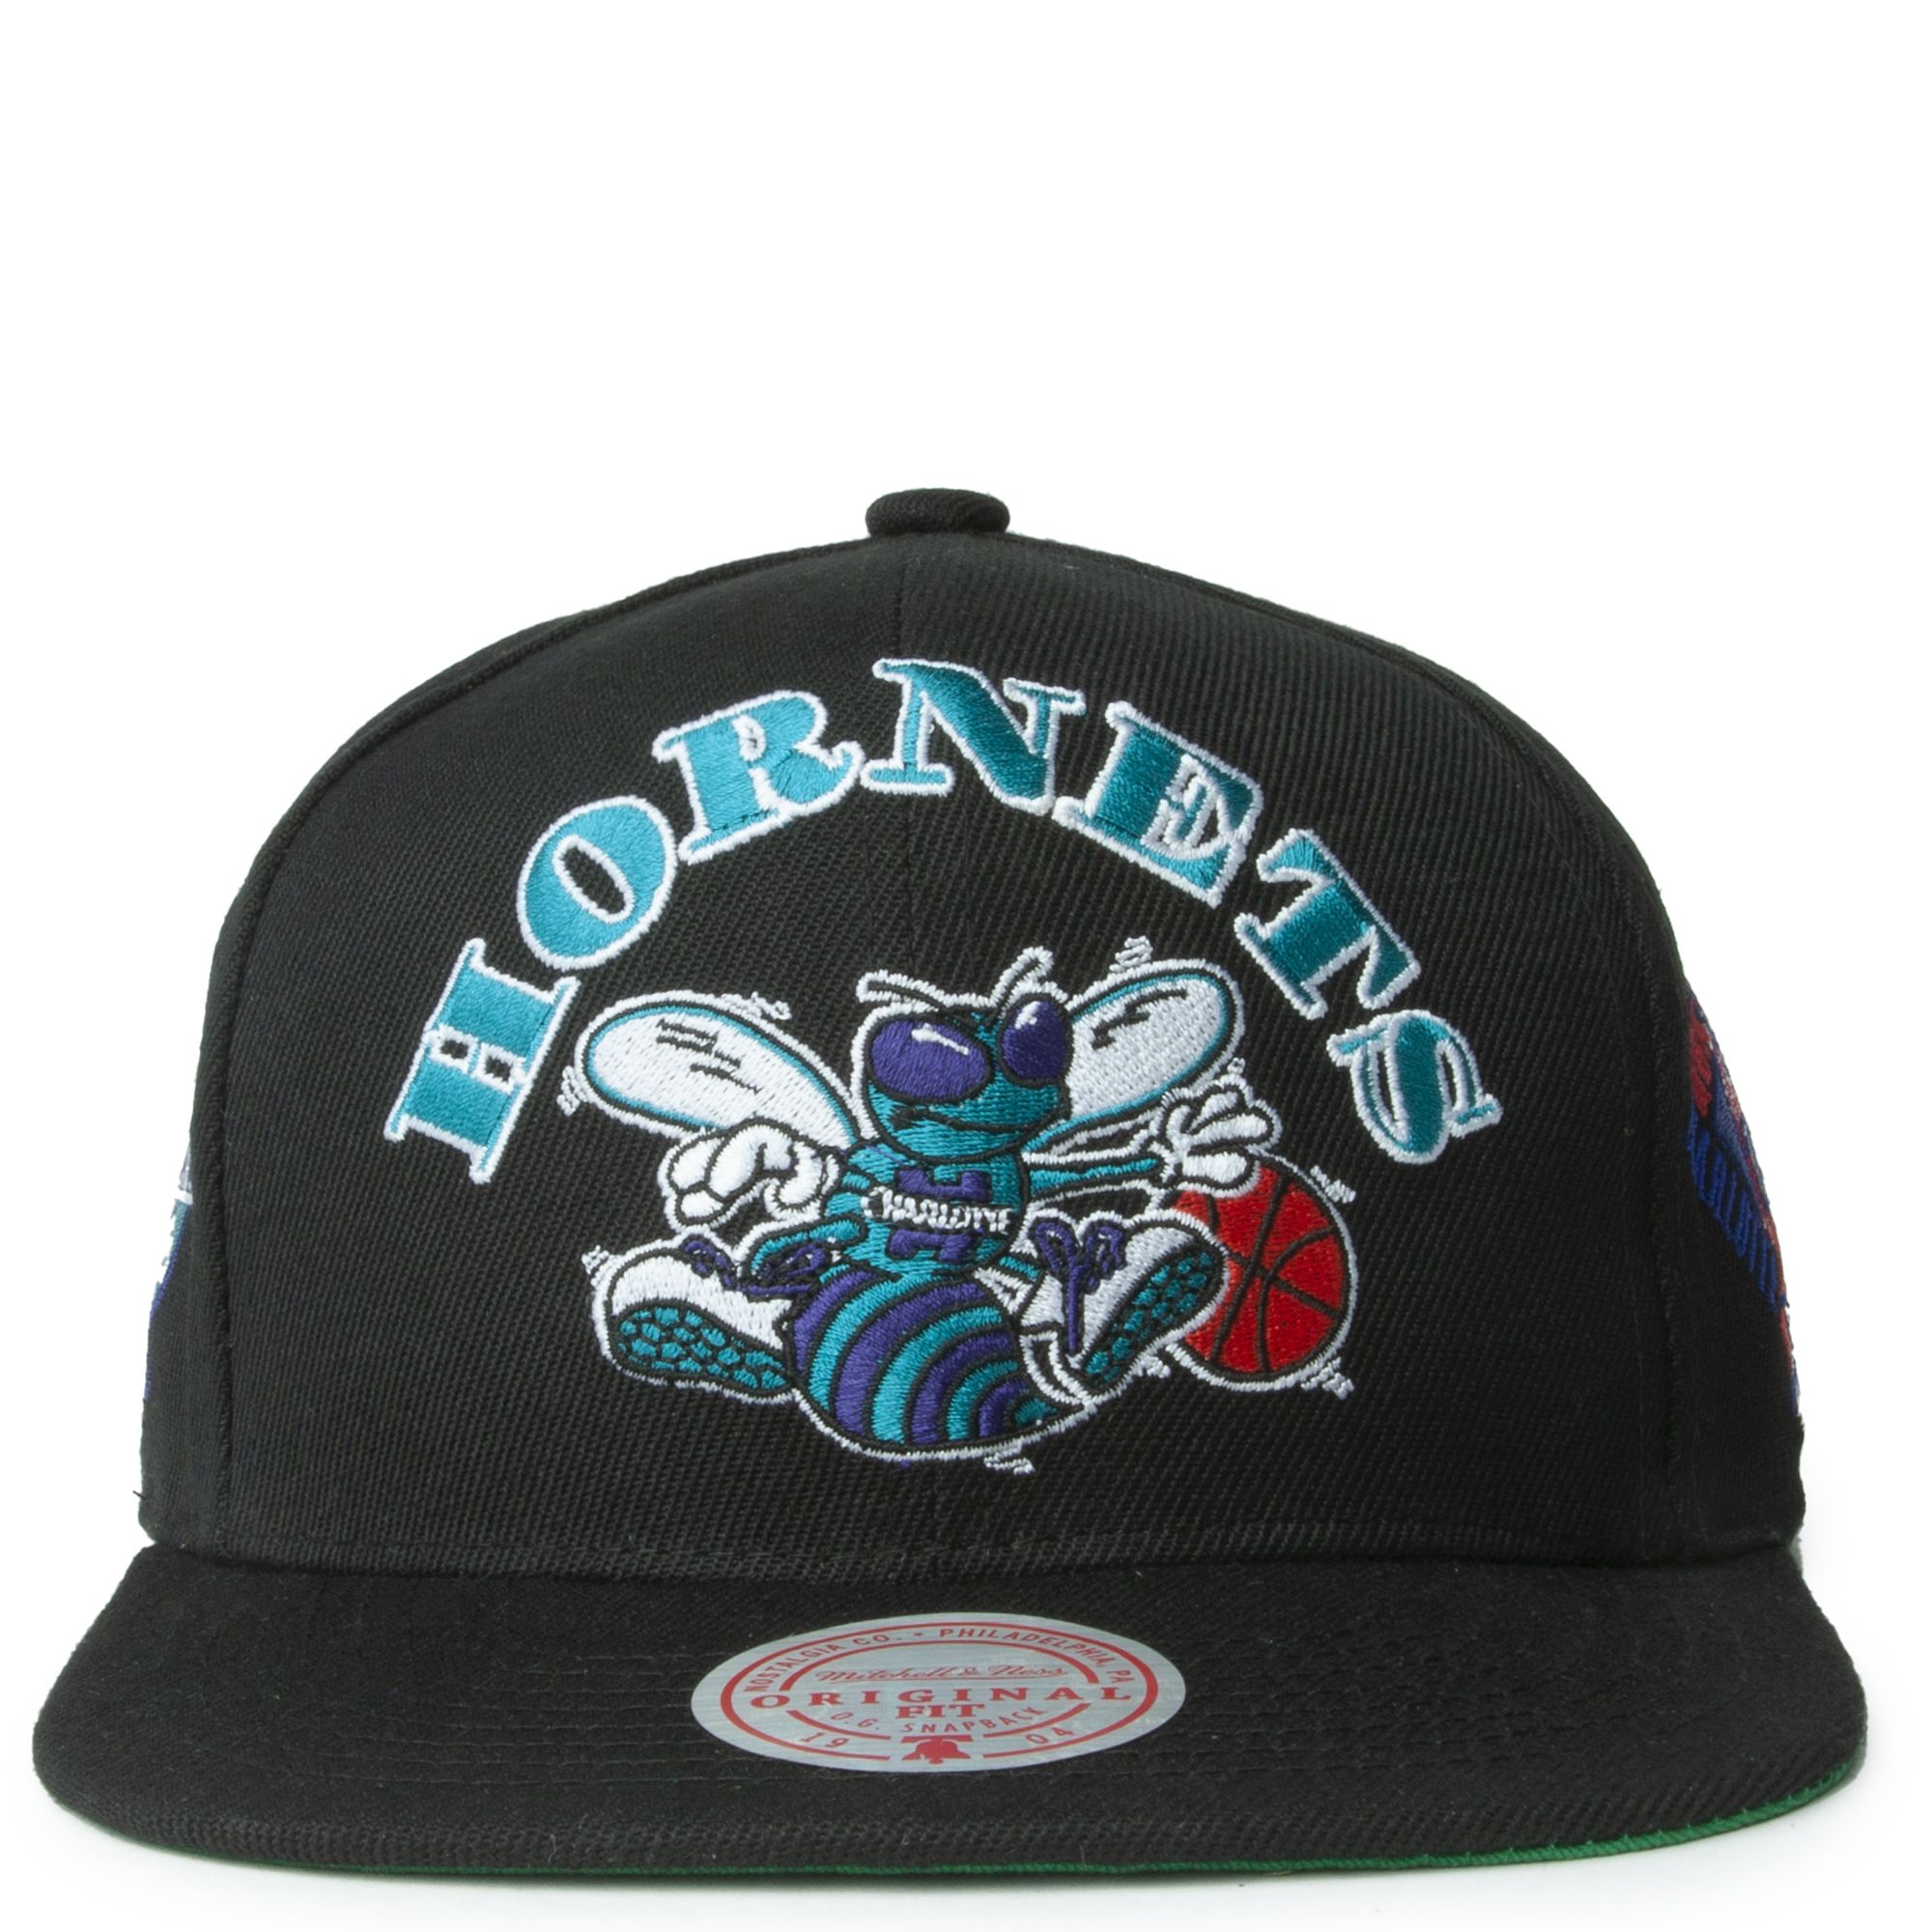 black charlotte hornets hat